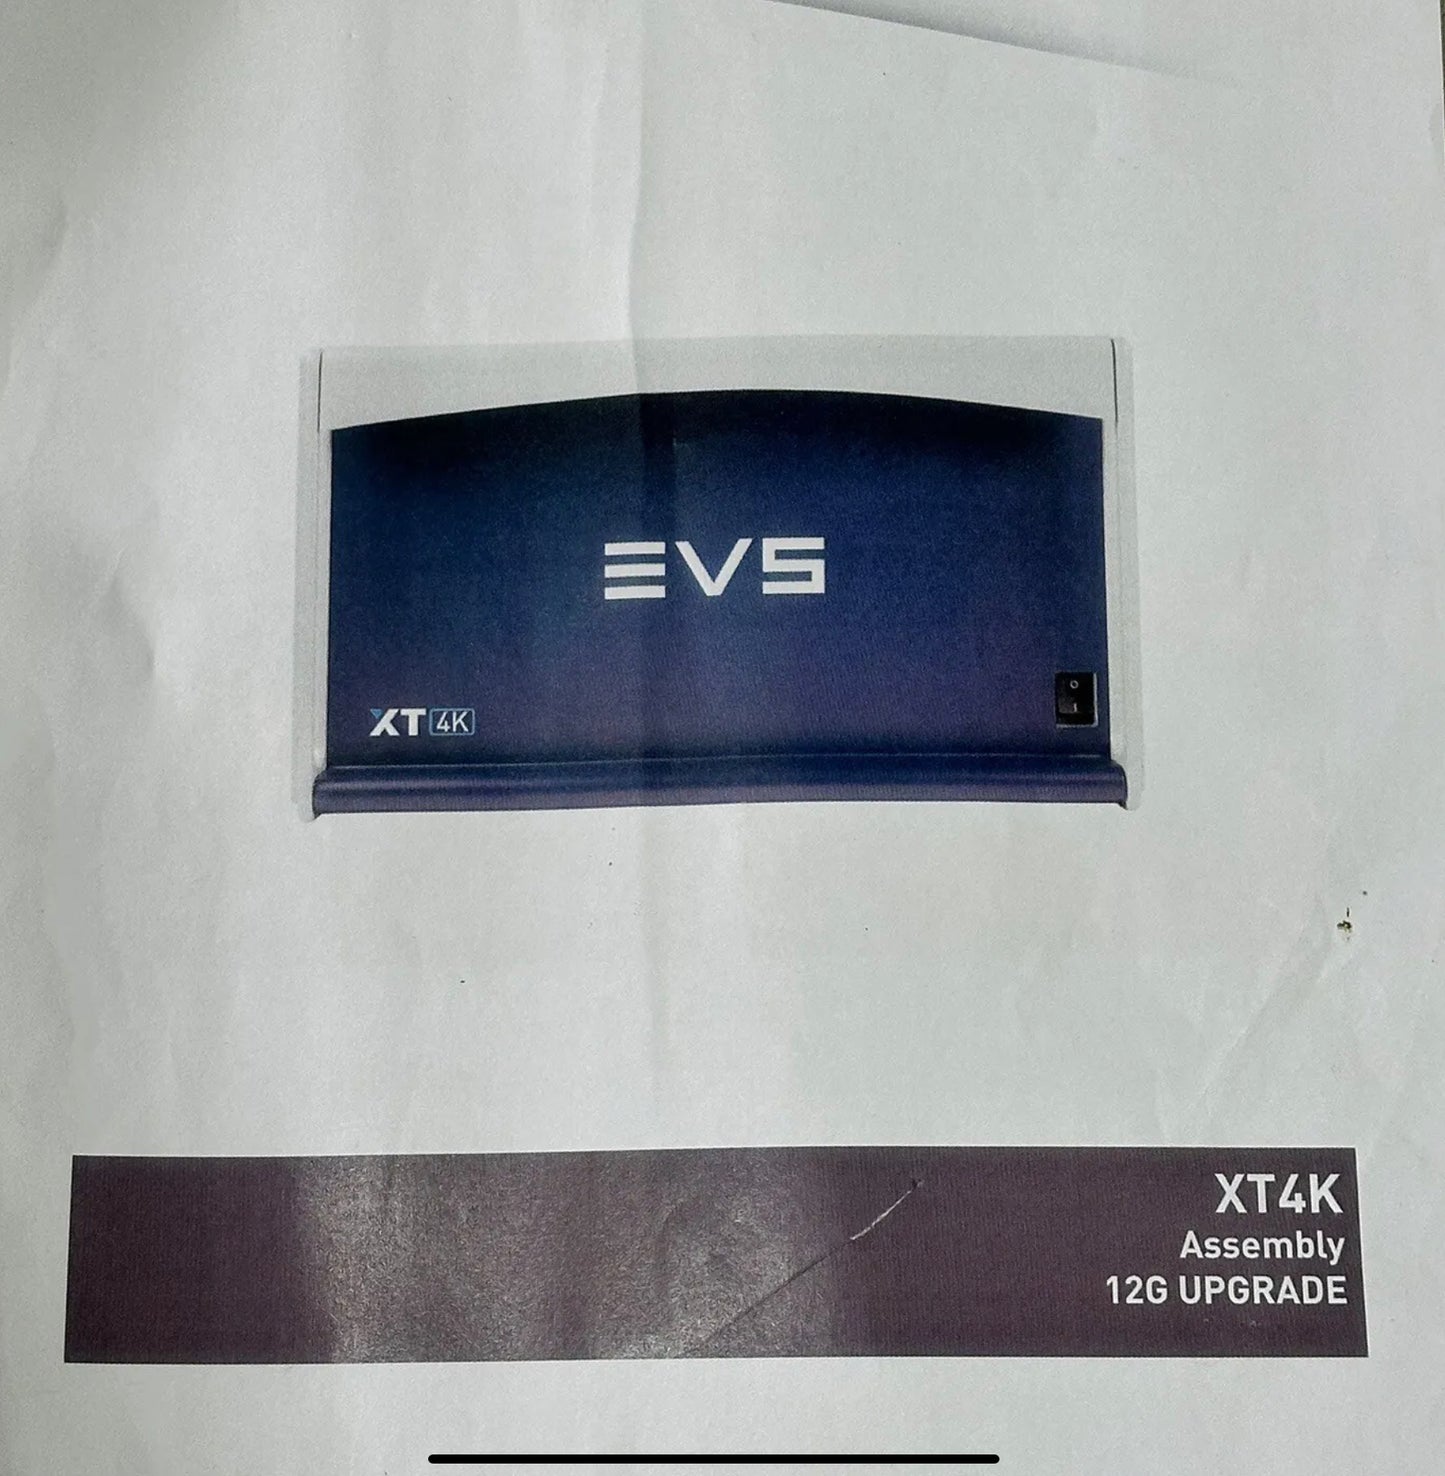 EVS 12G Upgrade Kit For XT4K